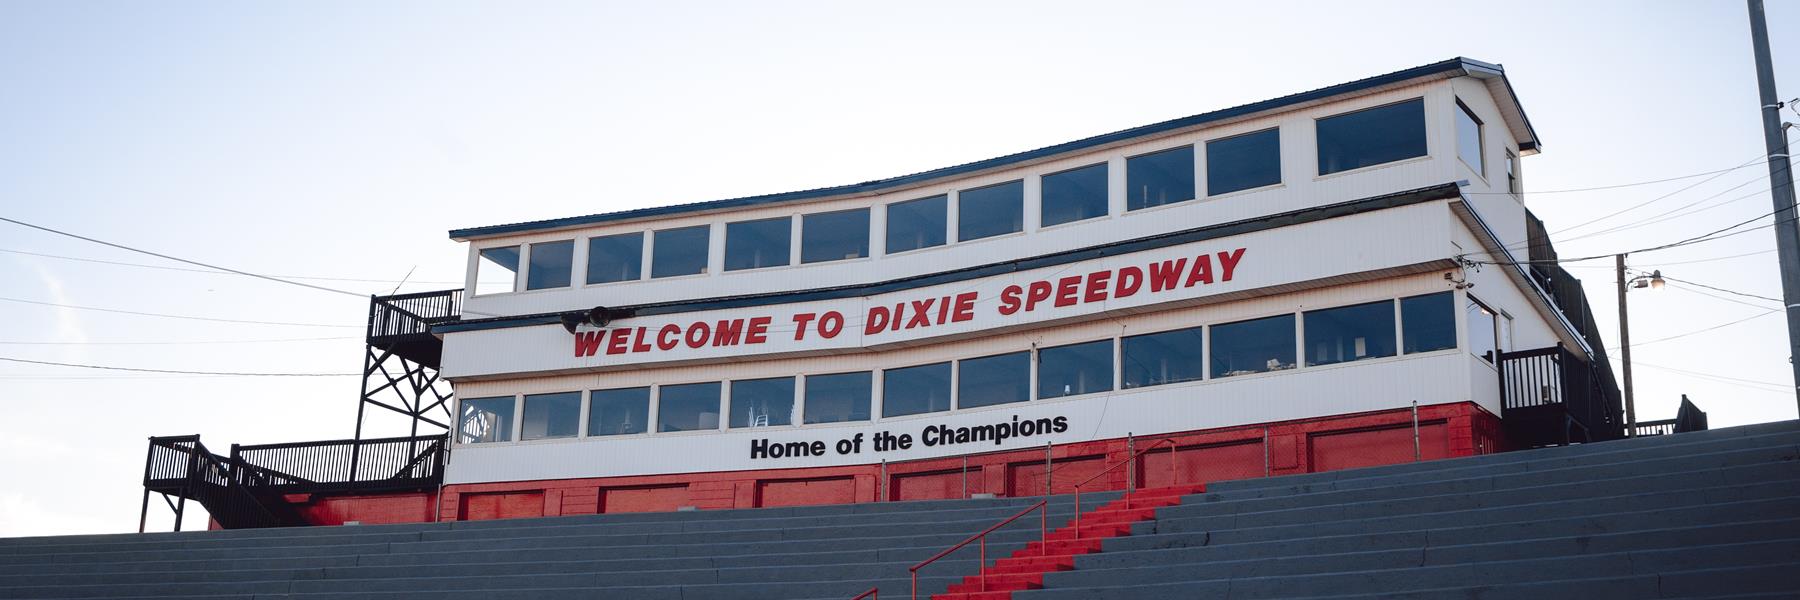 10/9/2010 - Dixie Speedway